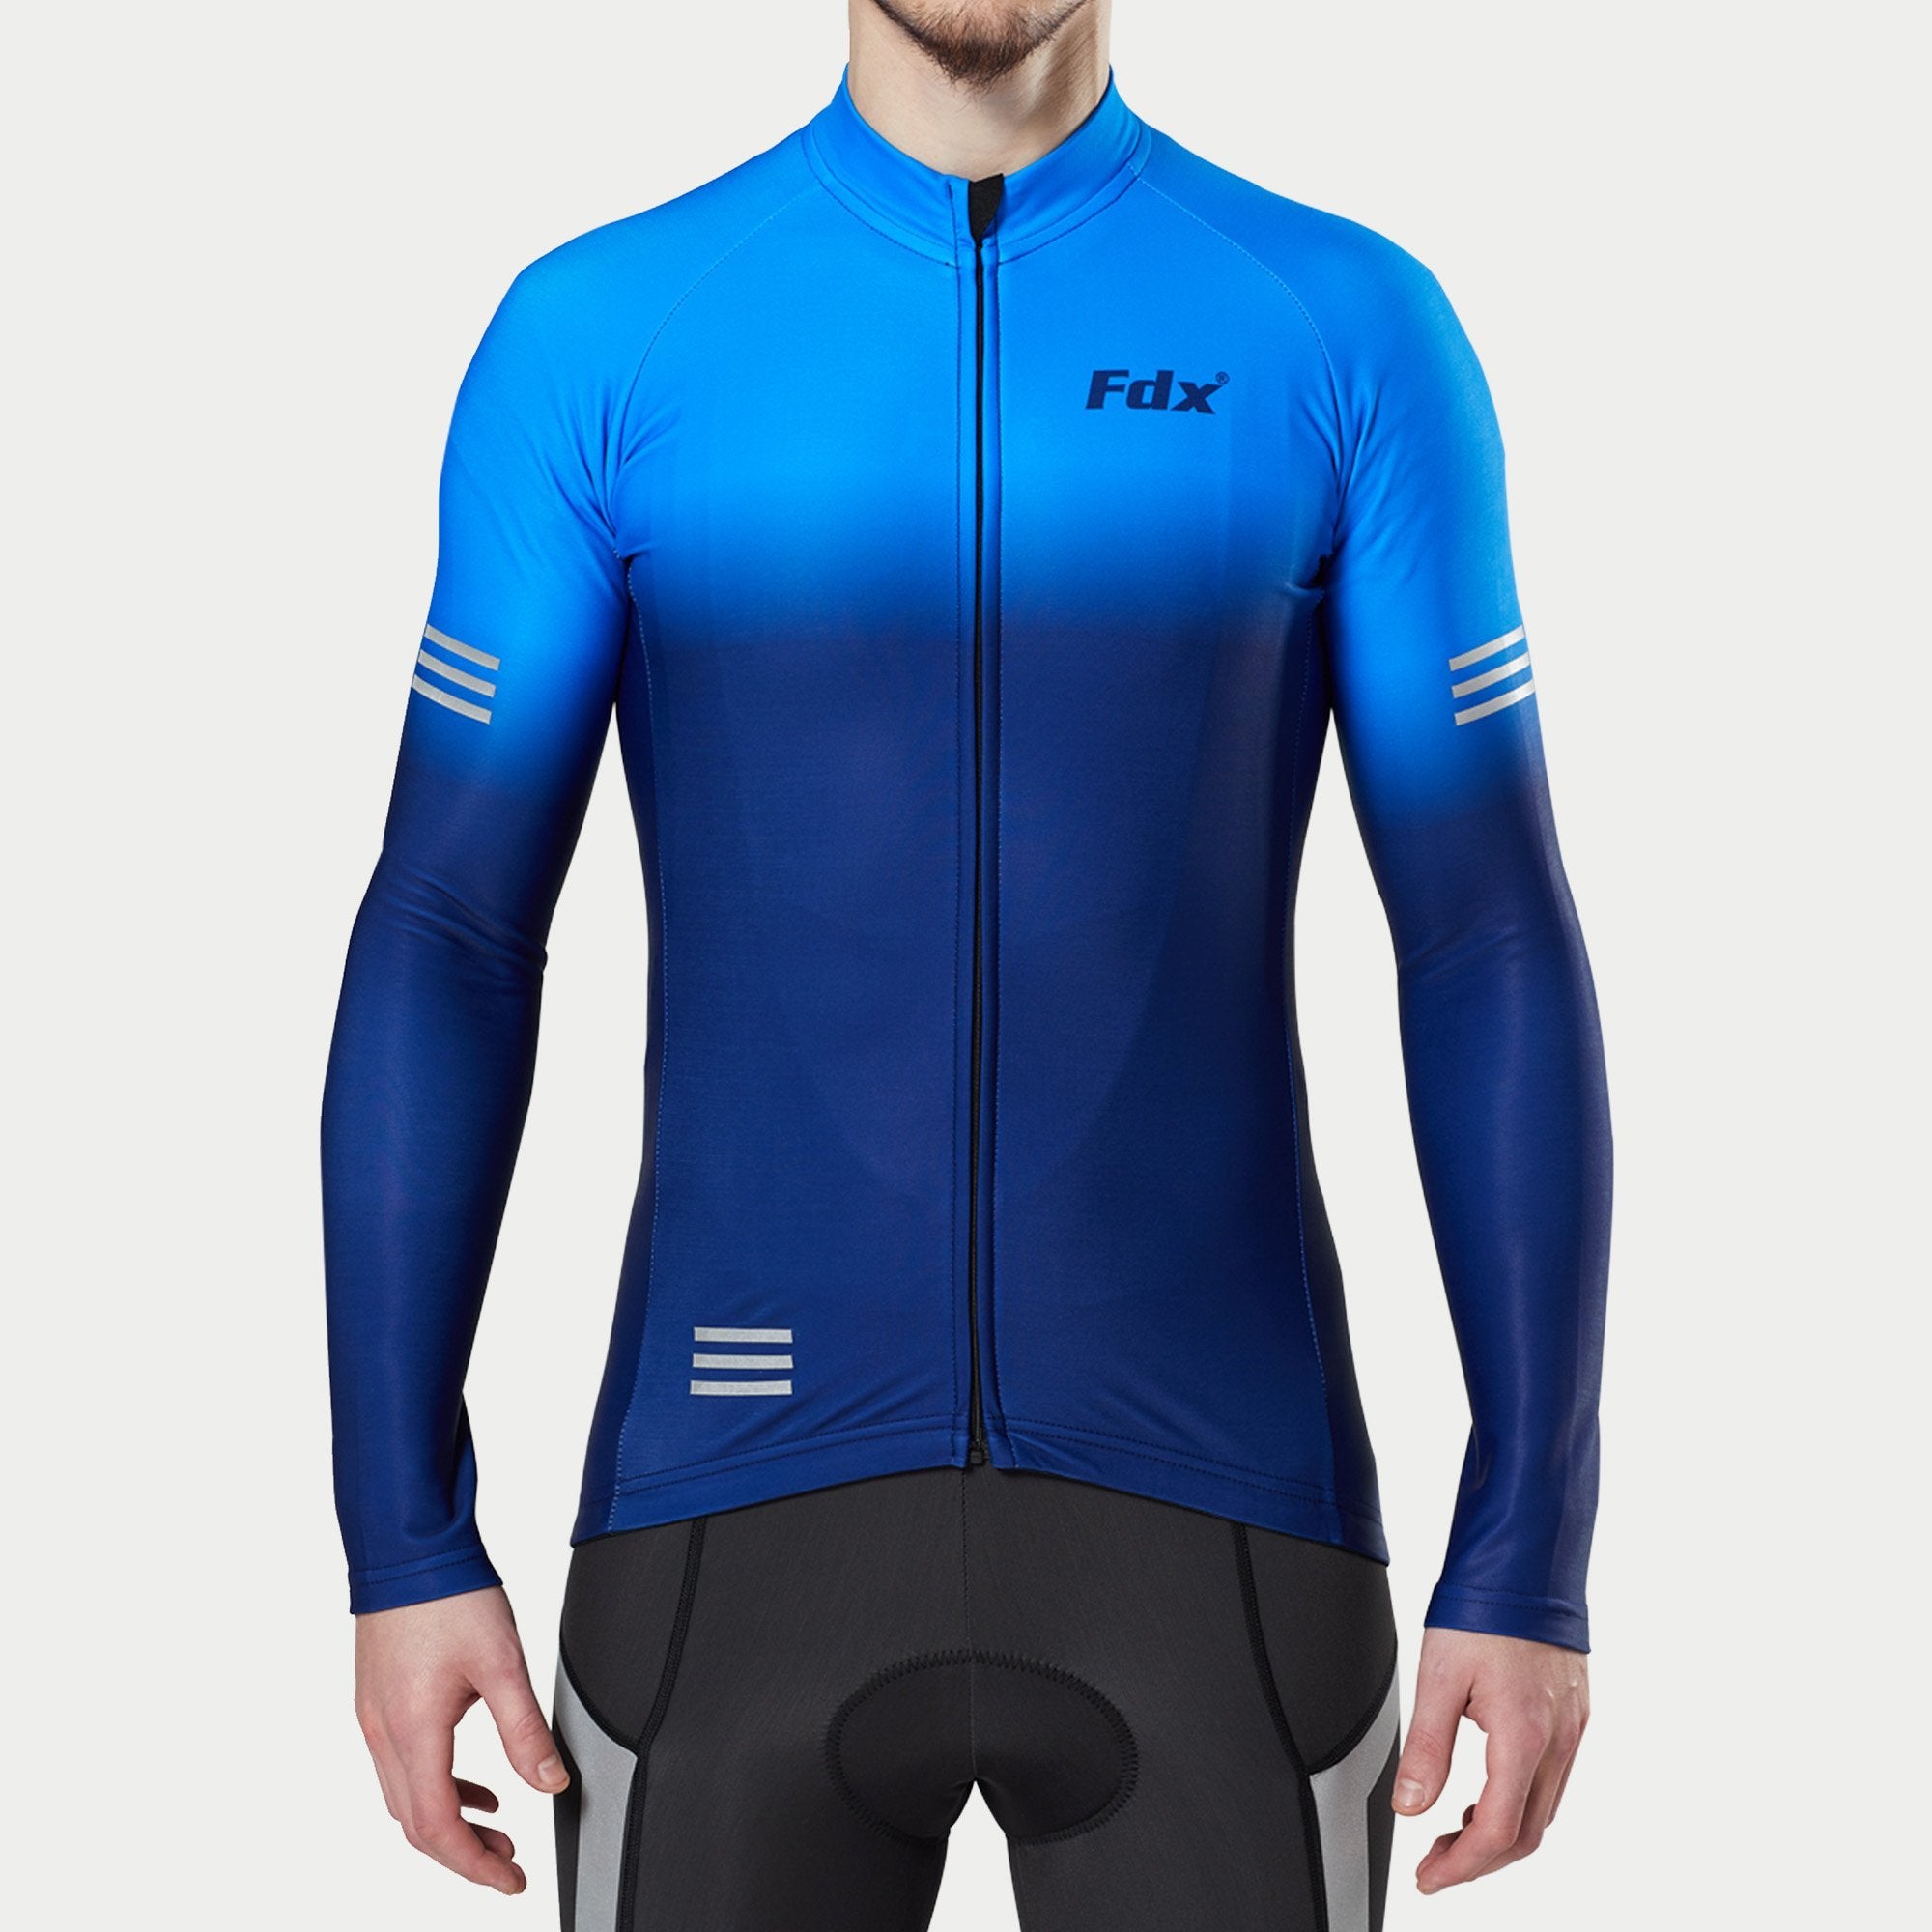 Fdx Men's Blue Best Long Sleeve Cycling Jersey for Winter Roubaix Thermal Fleece Road Bike Wear Top Full Zipper, Pockets & Hi viz Reflectors - Duo